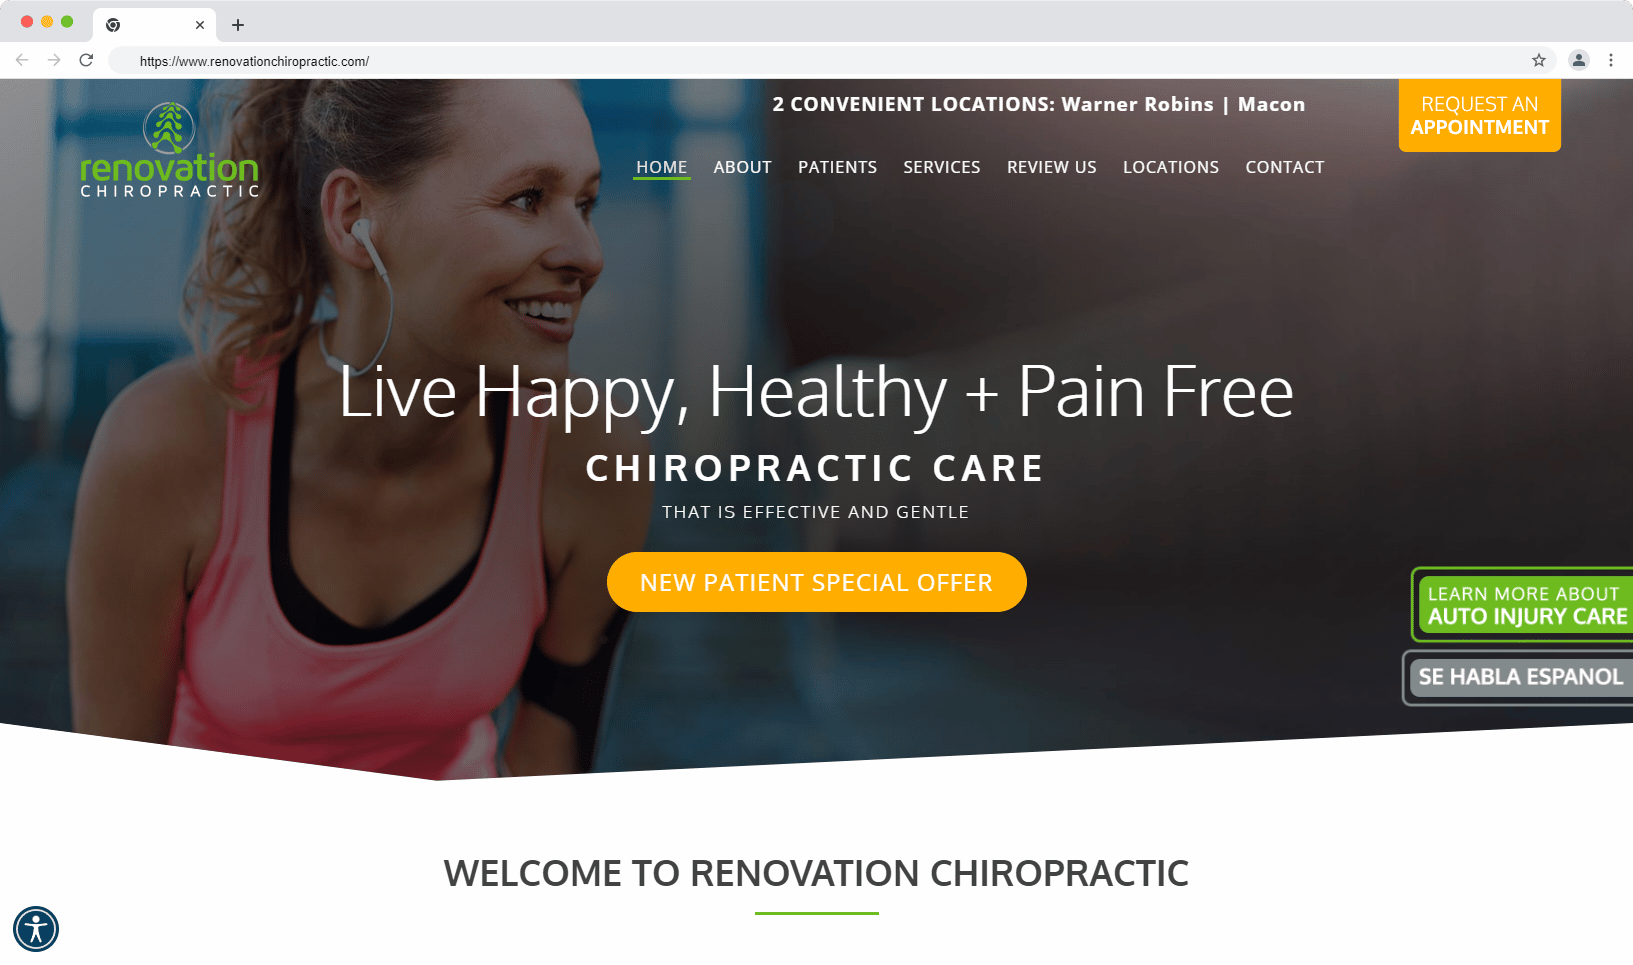 Chiropractor website design example 8